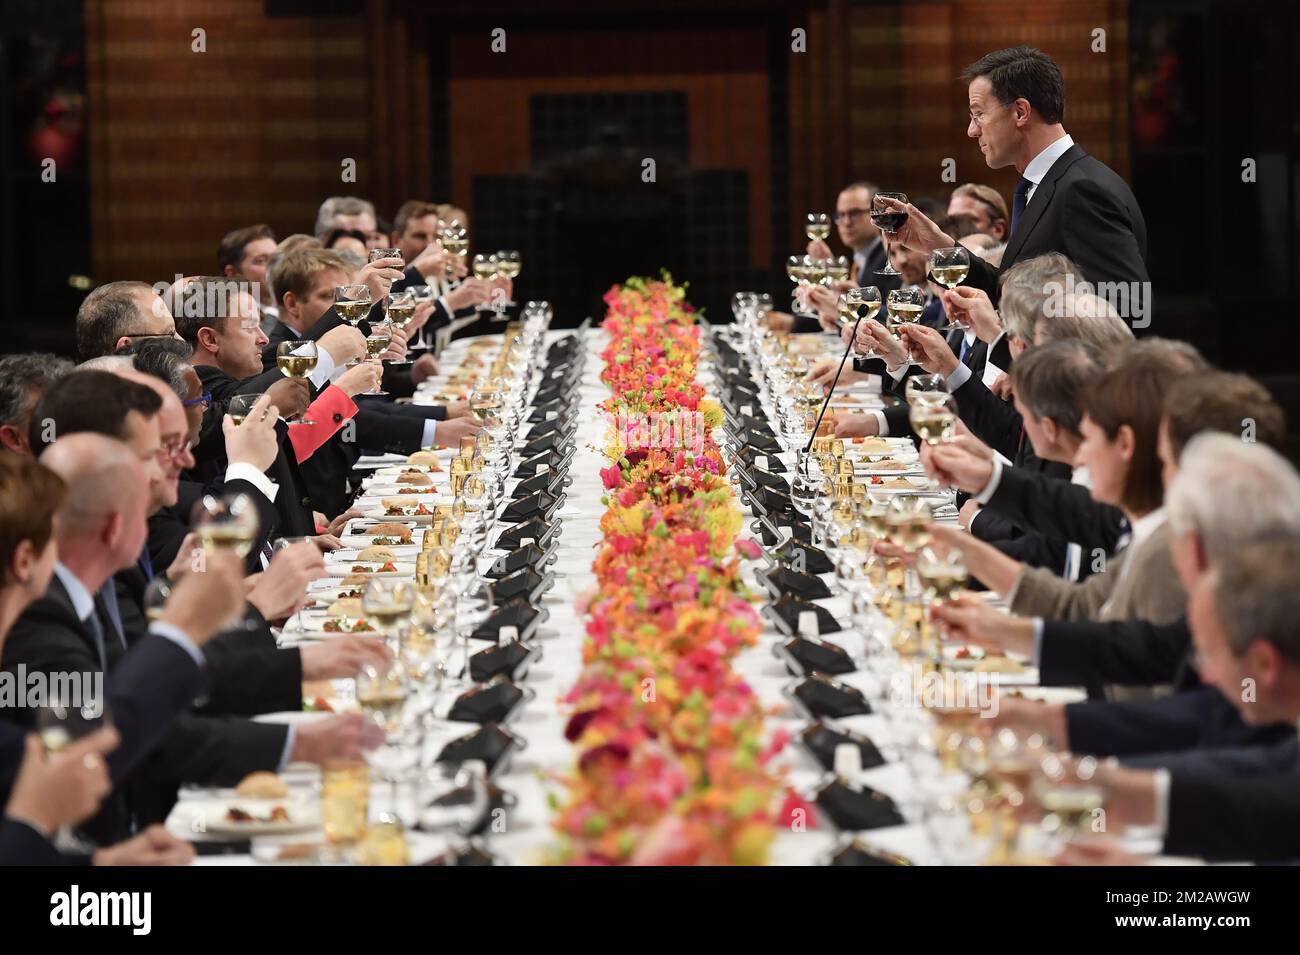 Le Premier ministre des pays-Bas, Mark Rutte, prononce un discours lors d'un dîner de gala à l'issue d'un sommet des pays du Benelux, à savoir le Luxembourg, les pays-Bas et la Belgique, le mercredi 08 novembre 2017, à Den Haag, aux pays-Bas. BELGA PHOTO DIRK WAEM Banque D'Images